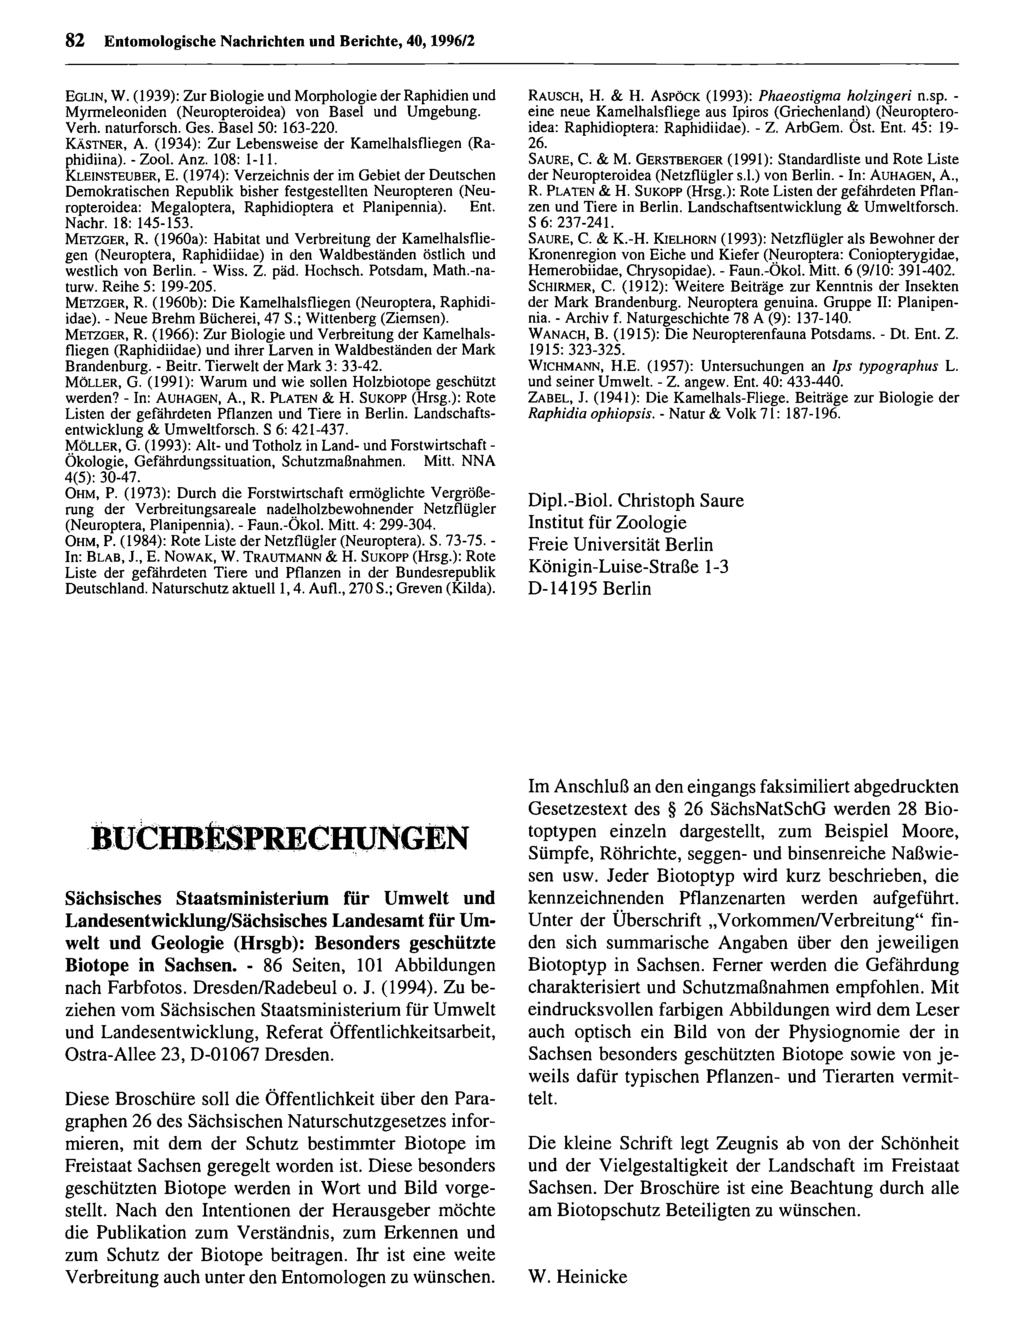 82 Entomologische Nachrichten Entomologische und Berichte, Nachrichten 40,1996/2 und Berichte; download unter www.biologiezentrum.at E g lin, W.